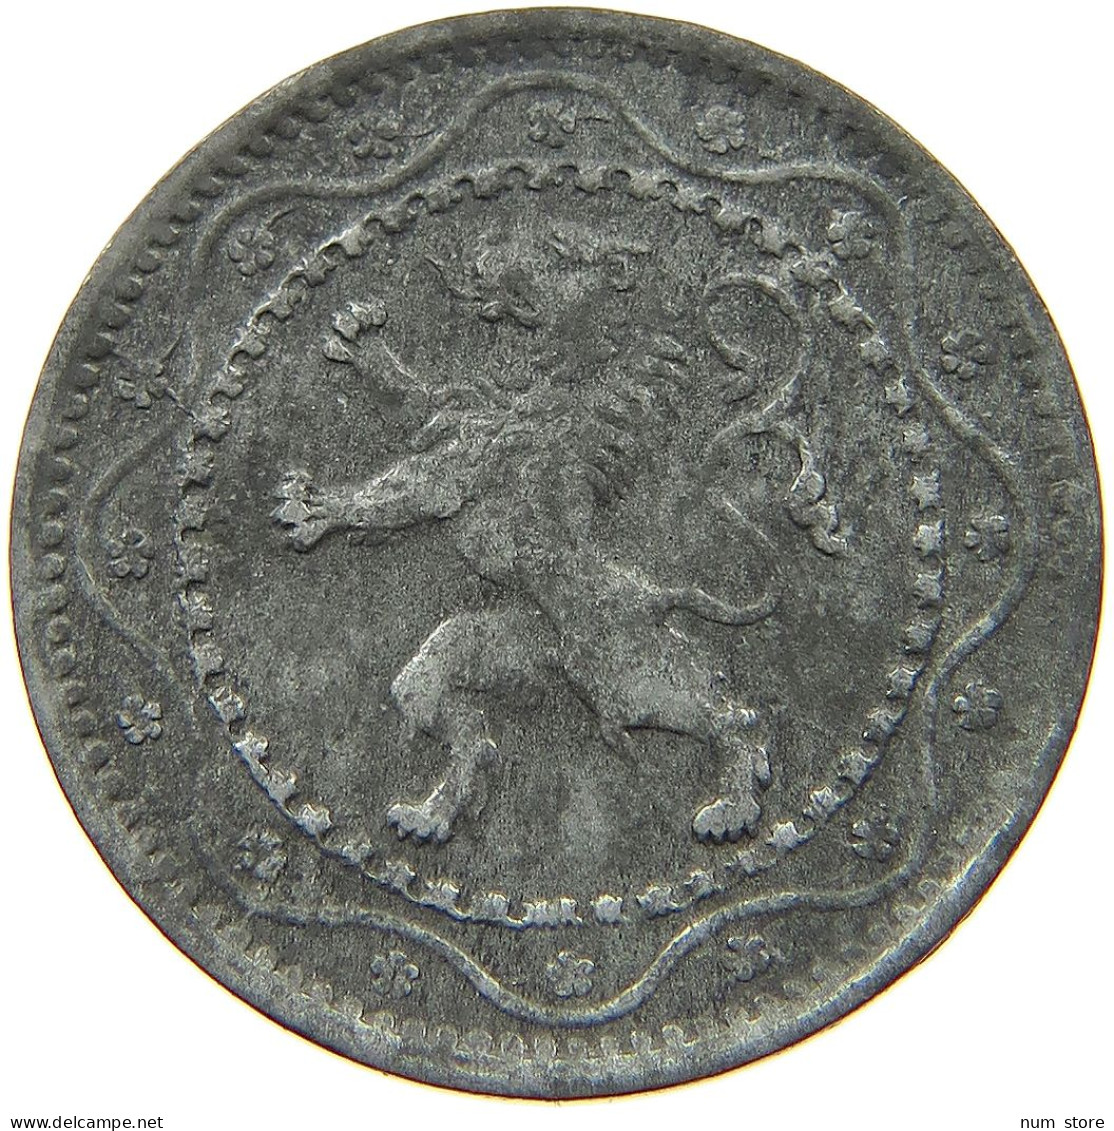 BELGIUM 5 CENTIMES 1916 #a057 0101 - 5 Cents